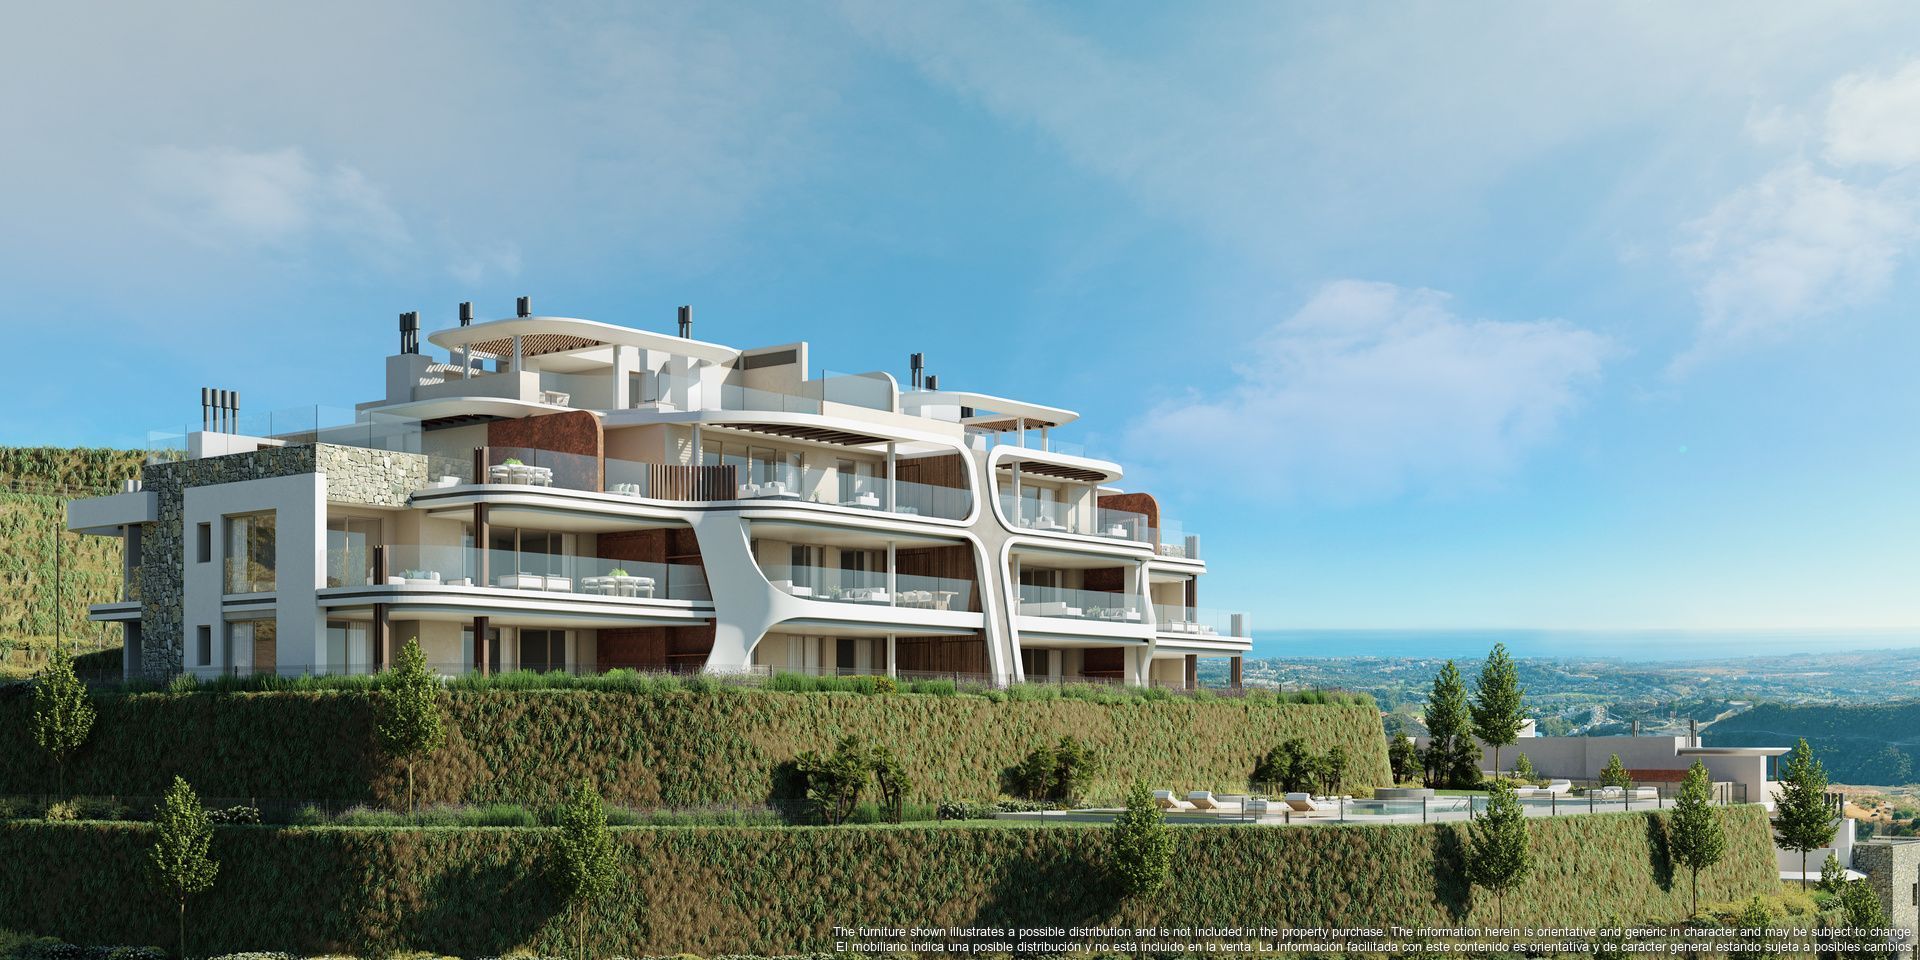 This latest development raises the bar for luxury living in Marbella, Benahavis foto-3